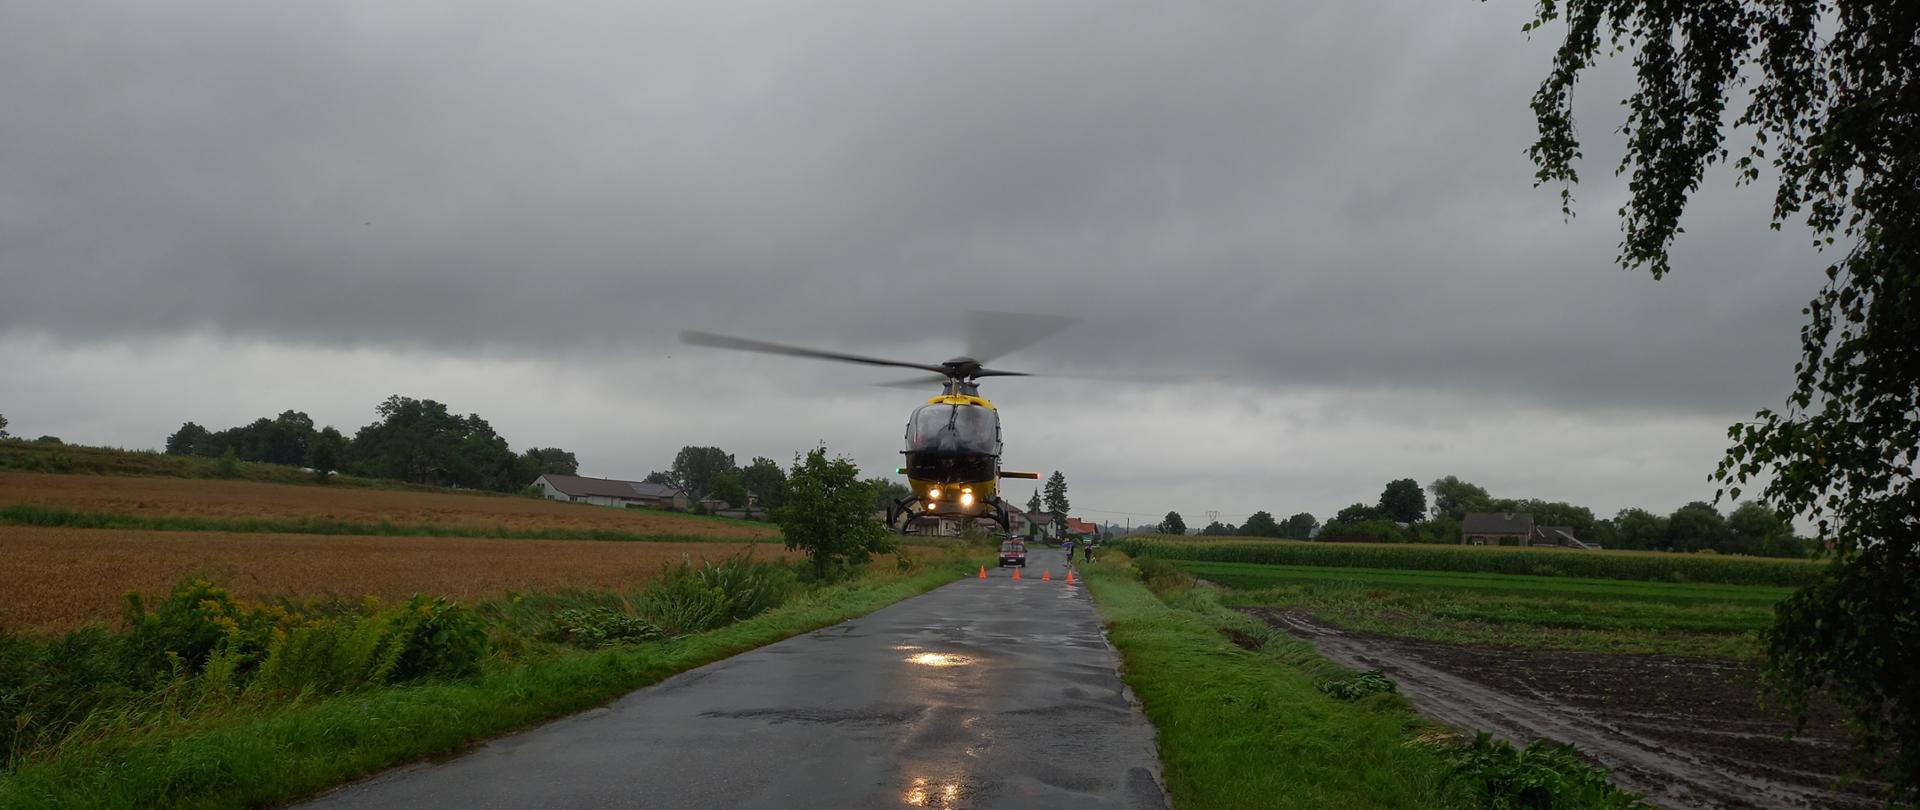 Helikopter Lotniczego Pogotowia Ratunkowego startuje z miejsca zdarzenia zabierając poszkodowanego do szpitala